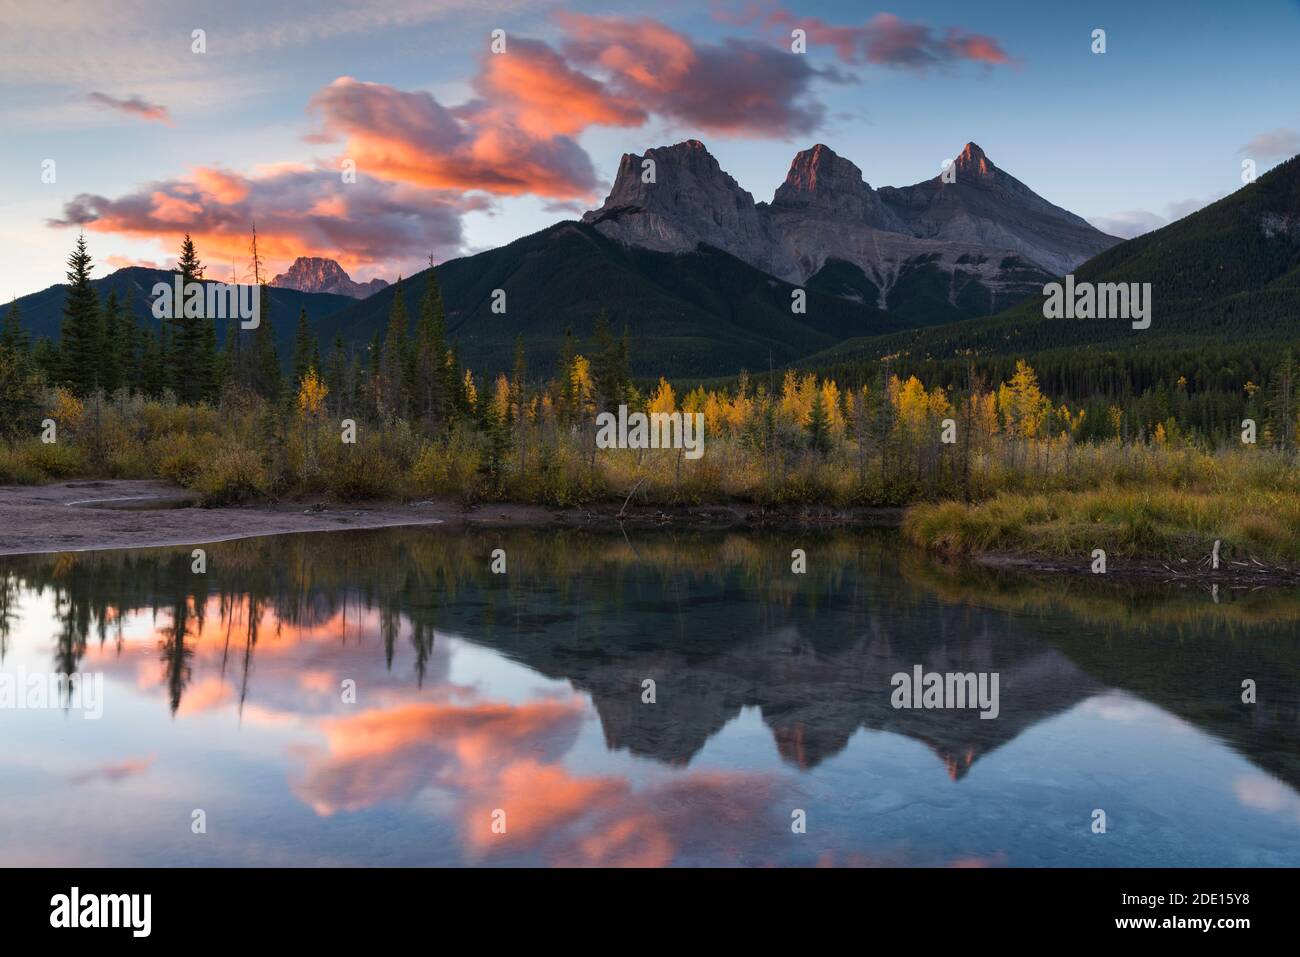 Lever de soleil en automne à Three Sisters Peaks près du parc national Banff, Canmore, Alberta, Rocheuses canadiennes, Canada, Amérique du Nord Banque D'Images